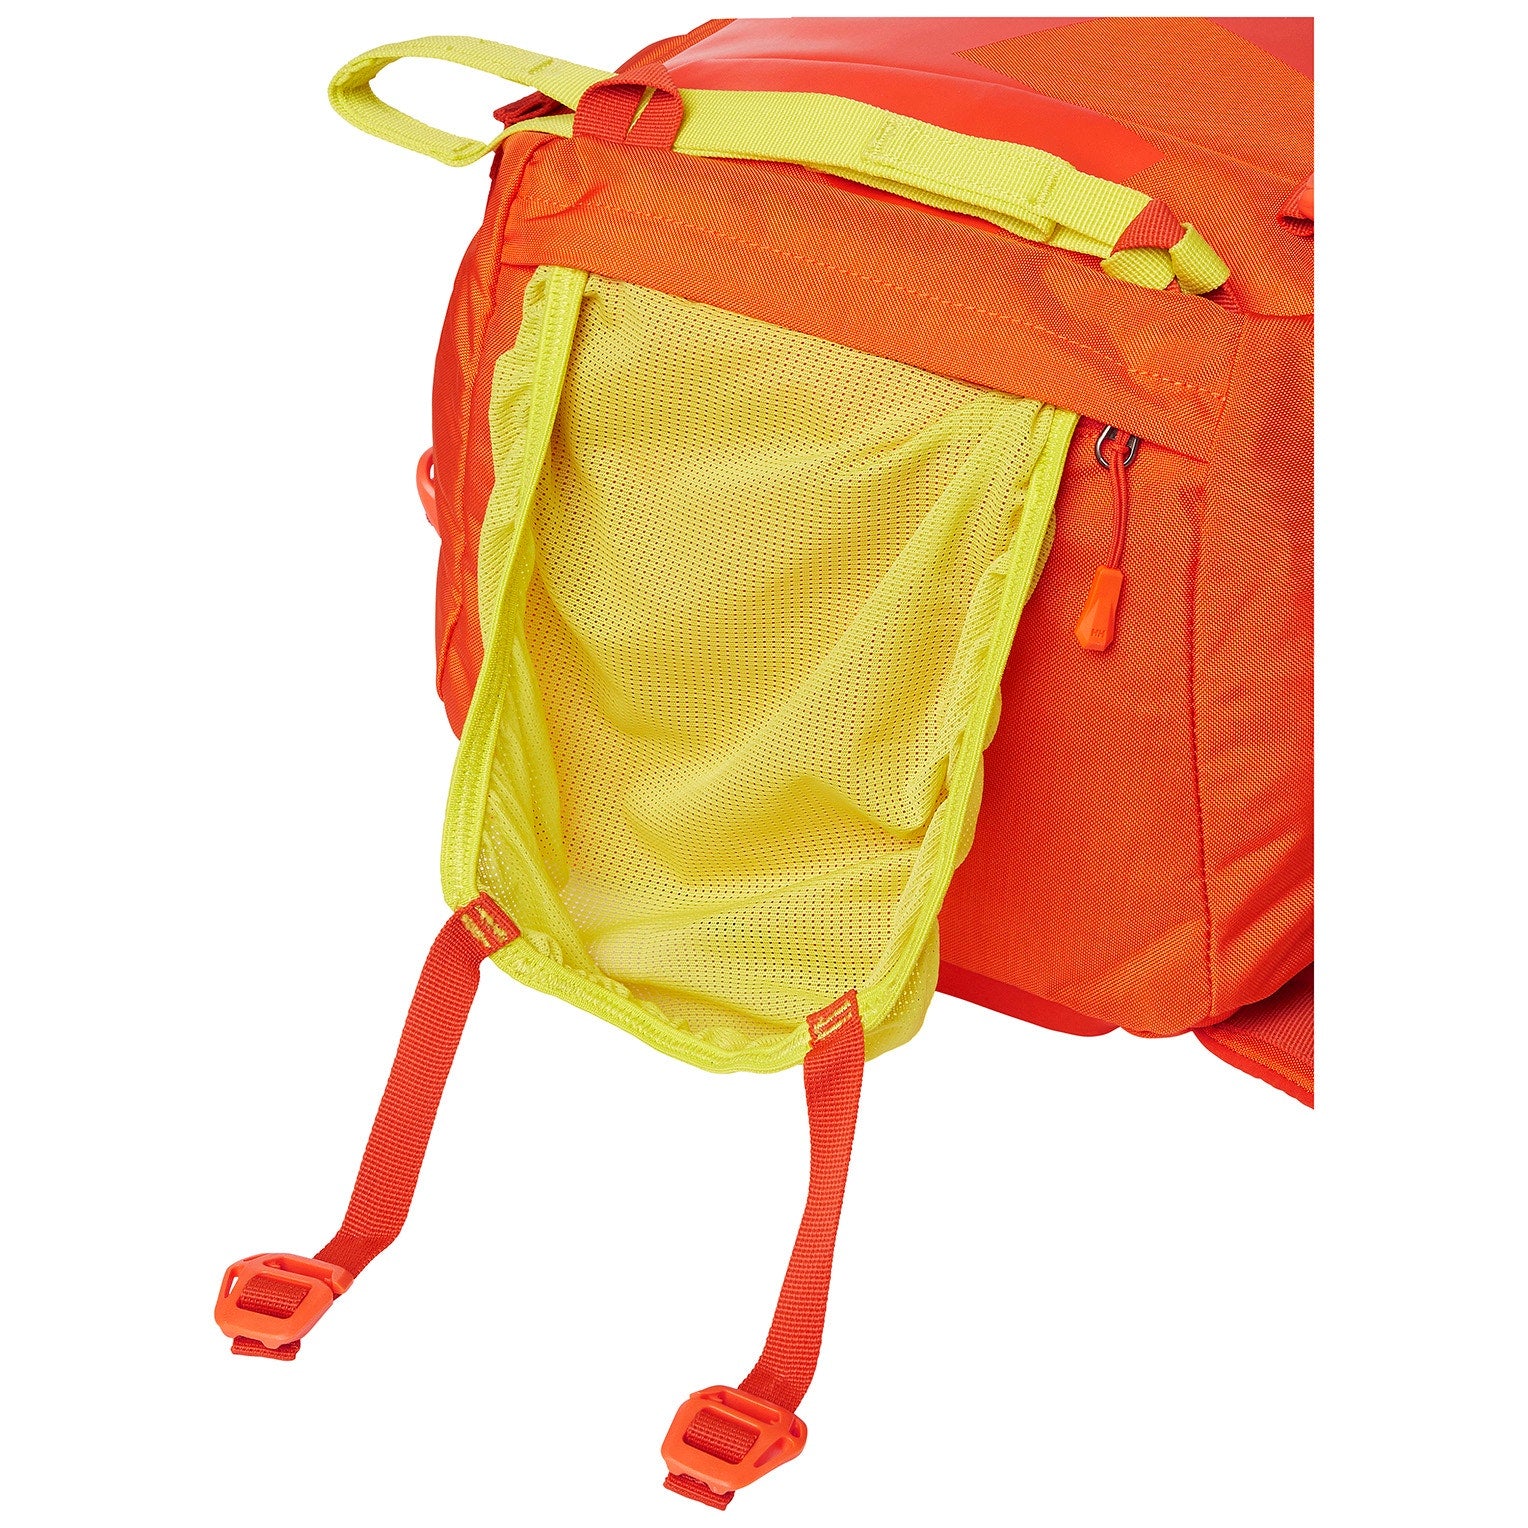 ULLR RS30 - Backpack - Bright Orange